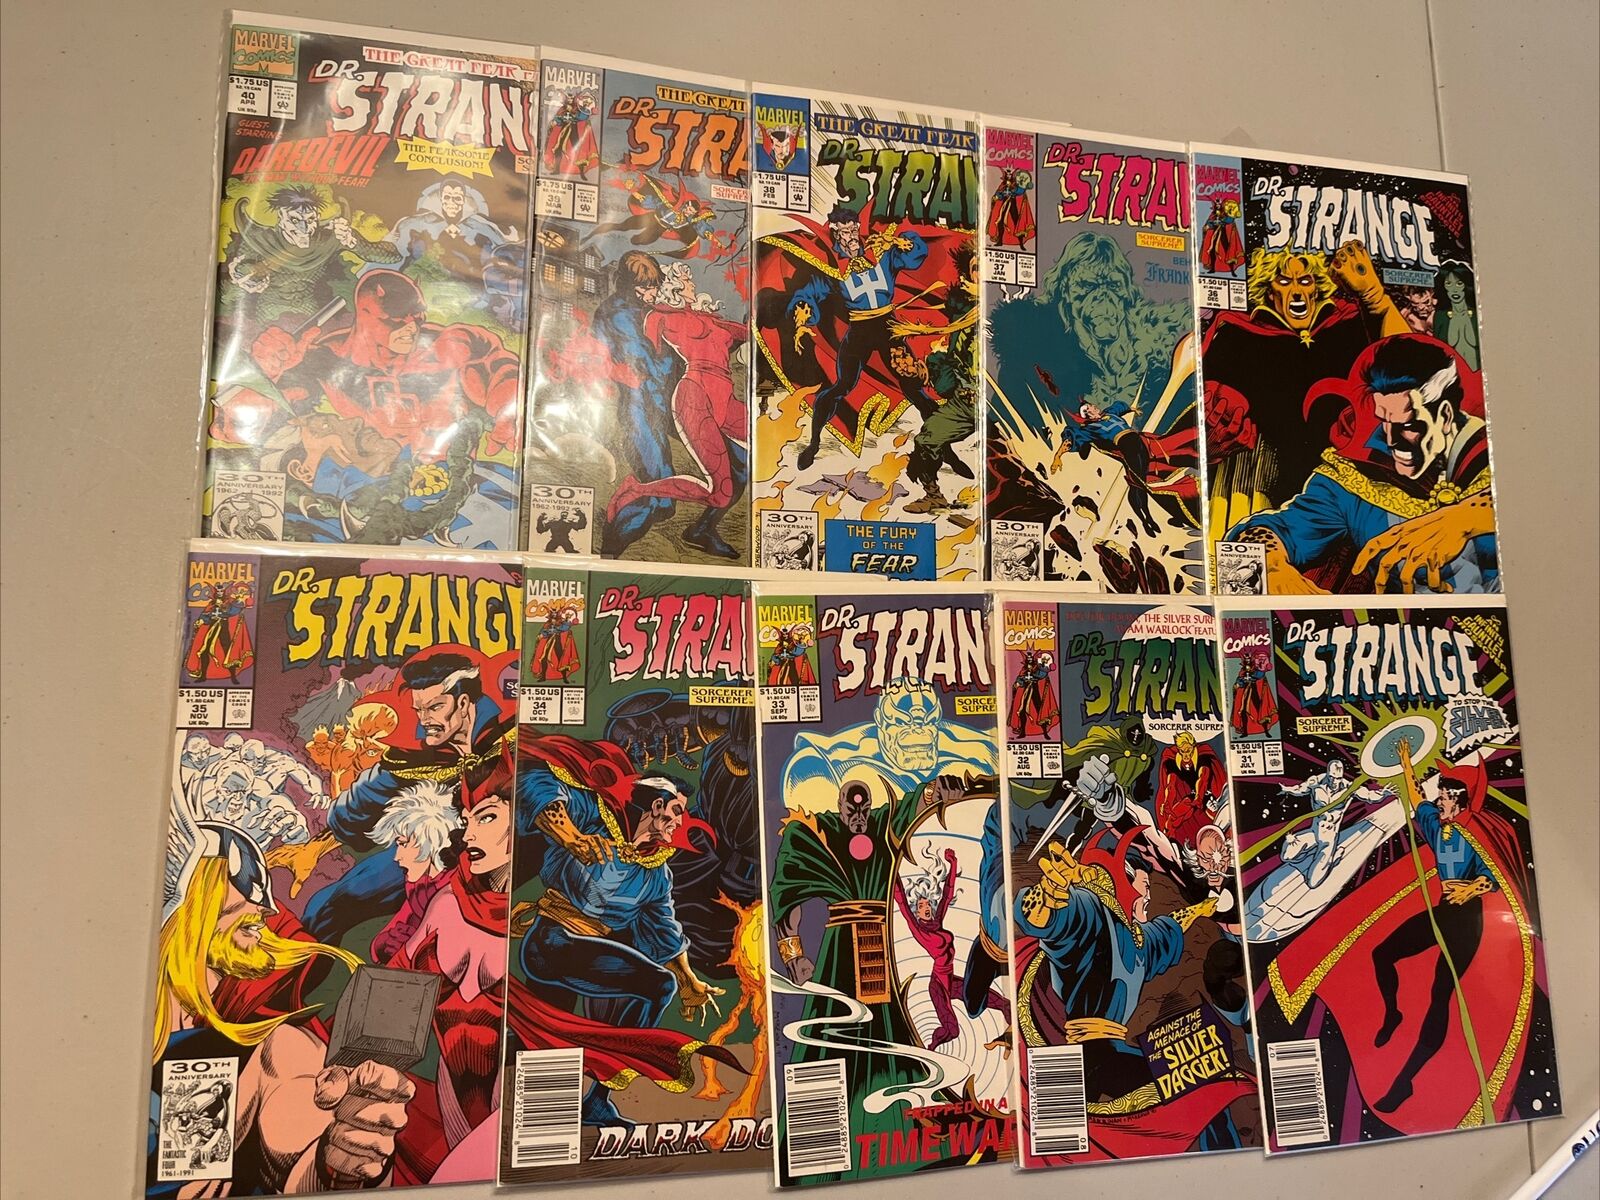 Marvel 1988 Doctor Strange Series Issues #31 - #40 all VF